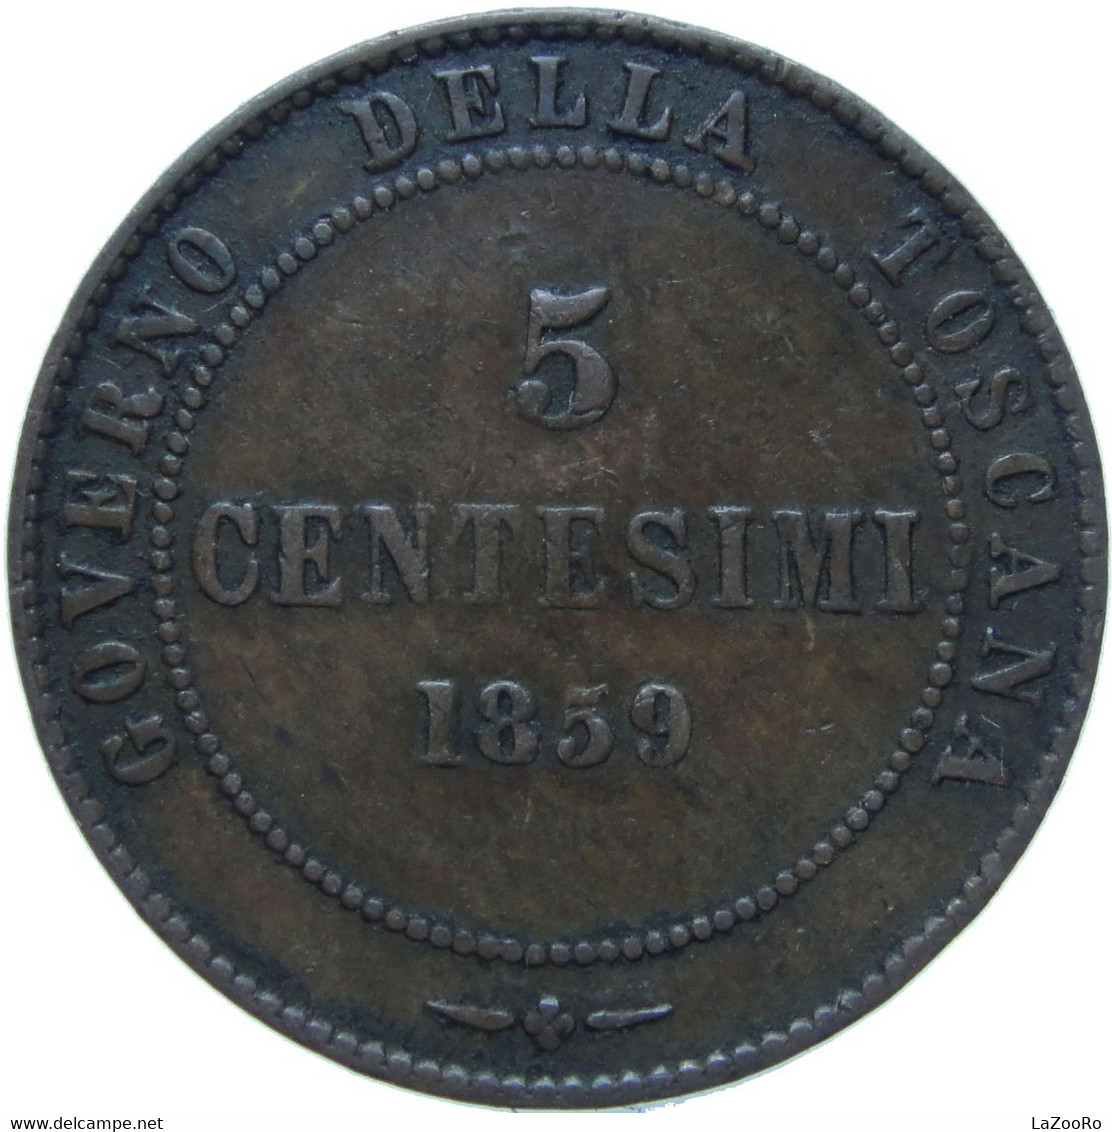 LaZooRo: Italy TUSCANY 5 Centesimi 1859 VF - Toskana